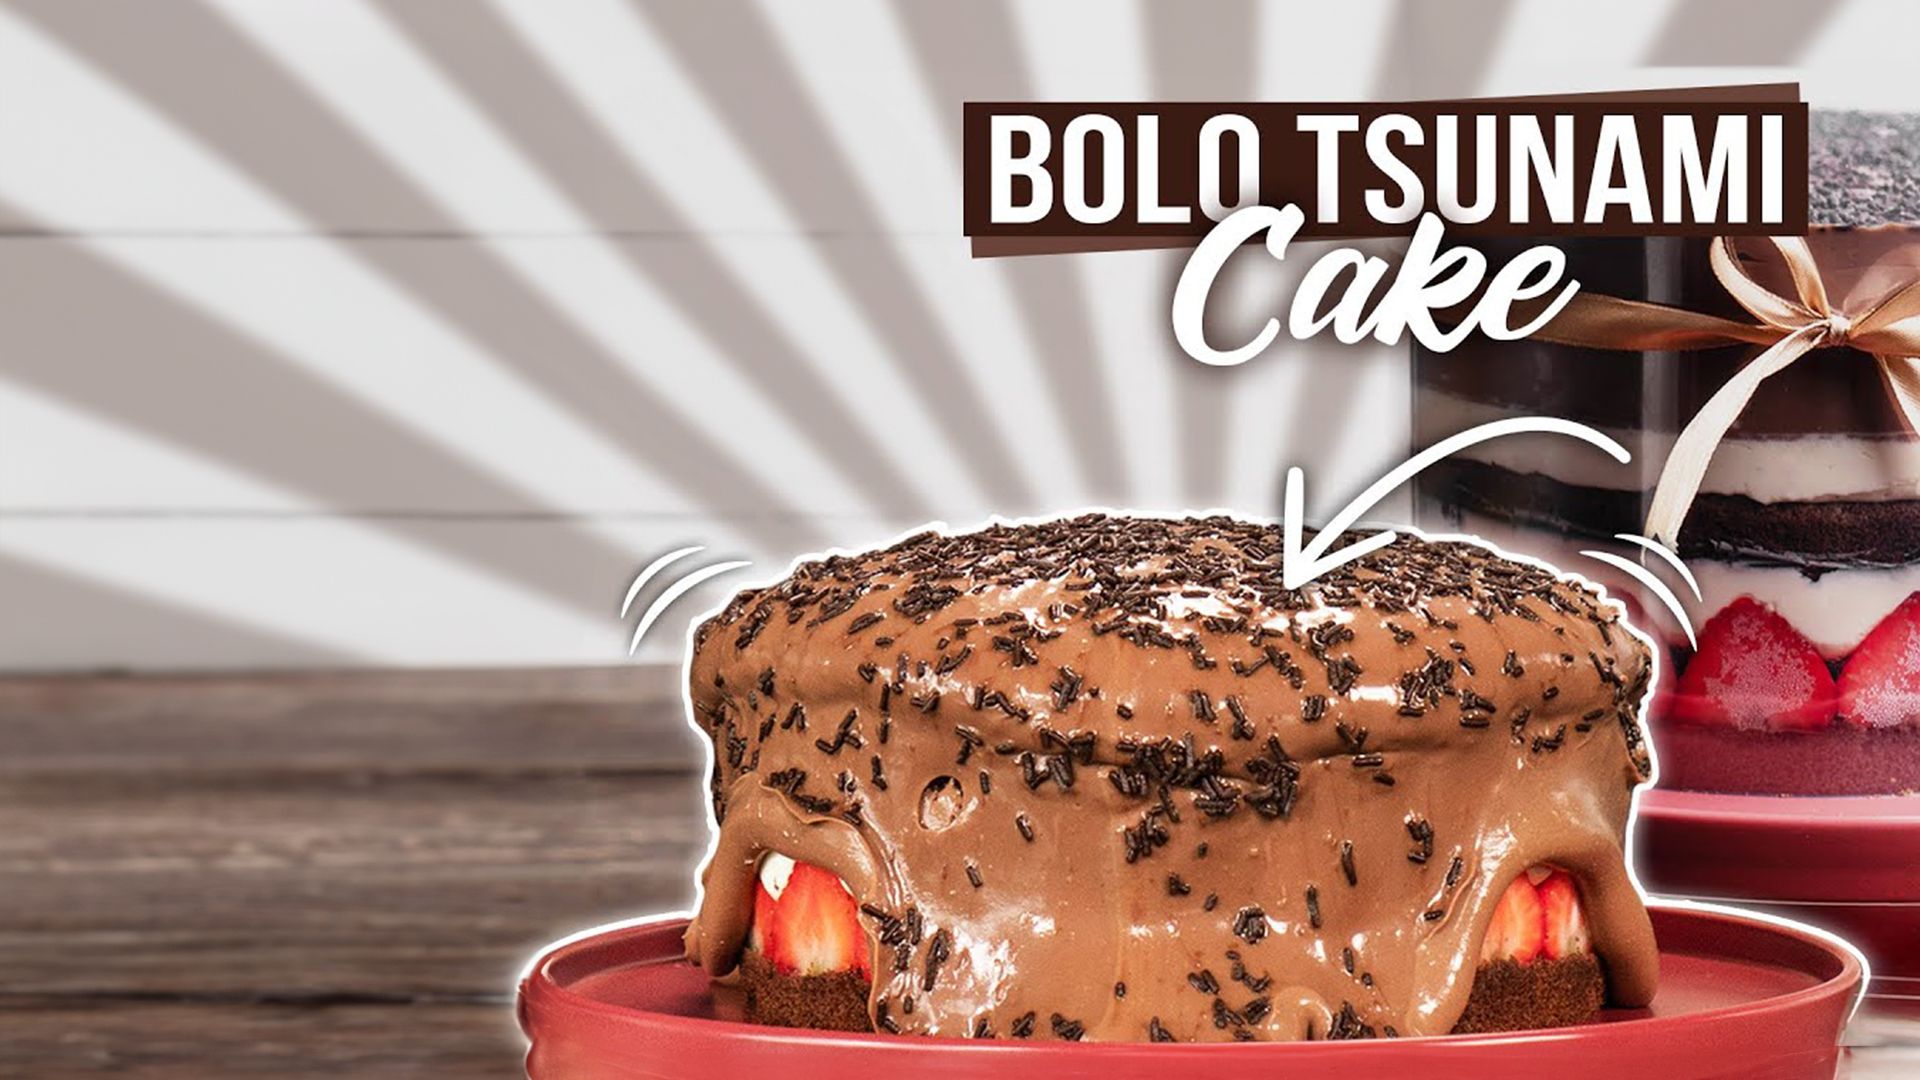 Bolo Tsunami Cake / Schokoladentorte / Caketrend 2020